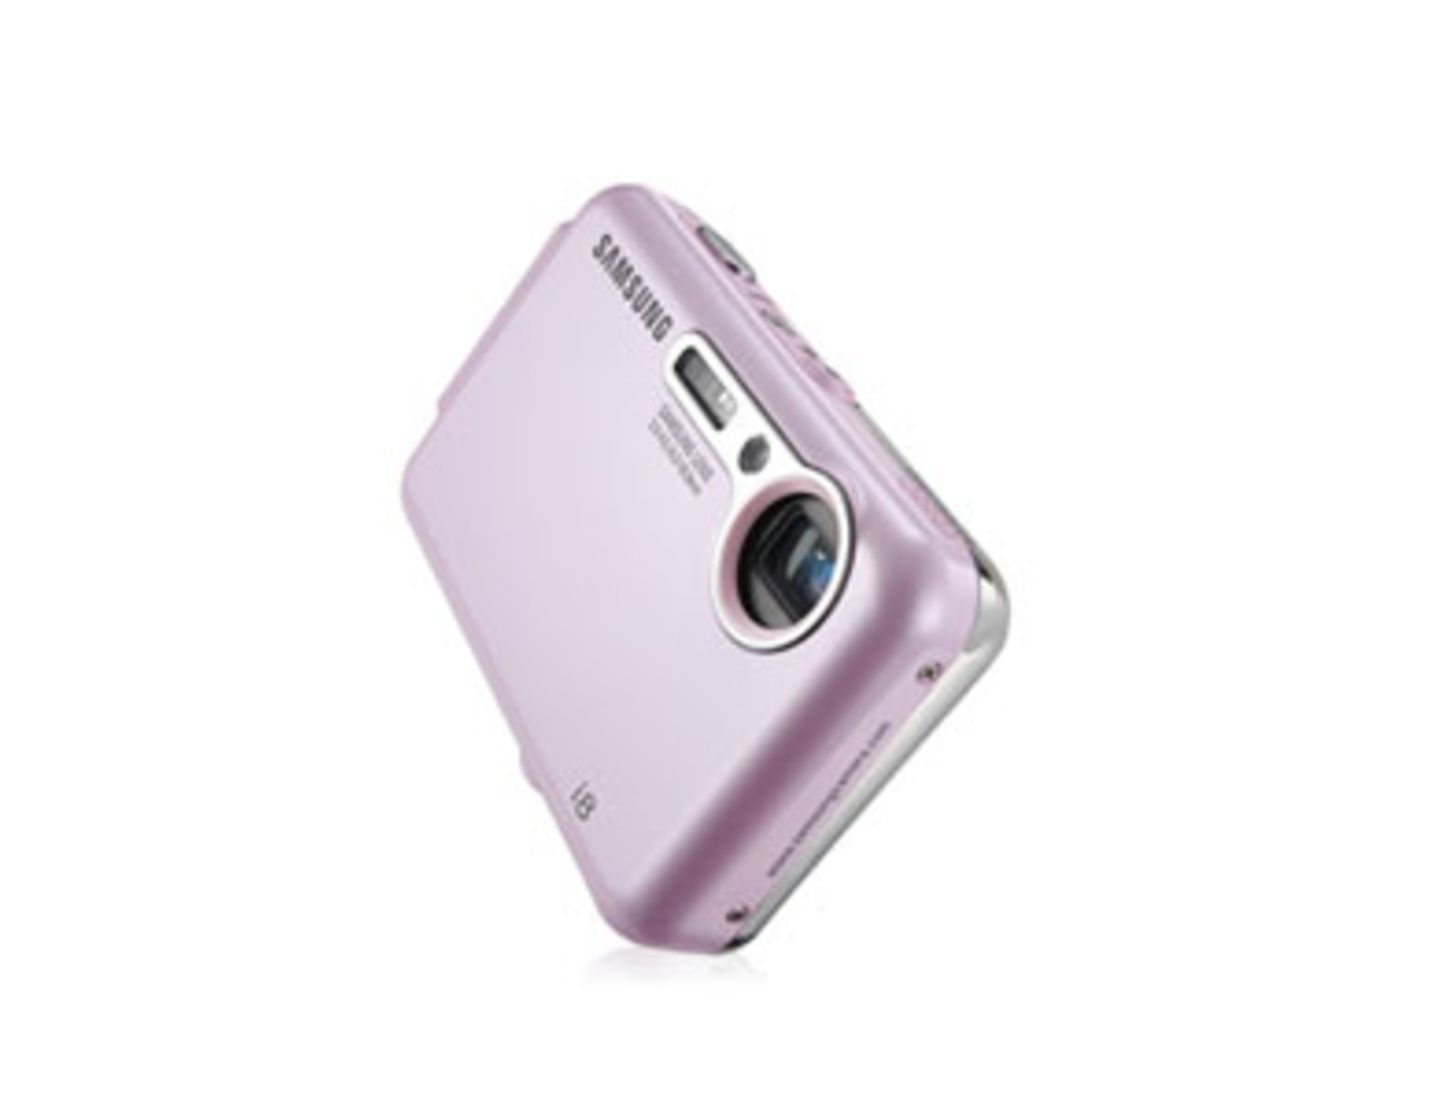 Die Samsung i8 ist ein echtes Multi-Talent. Denn in ihr steckt nicht nur eine Digitalkamera, sondern auch ein Camcorder, MP3-Player, digitales Diktiergerät, eBook, mobile Festplatte und ein internationaler Reiseführer. Um 280 Euro. Mehr Informationen findet ihr bei Samsung.